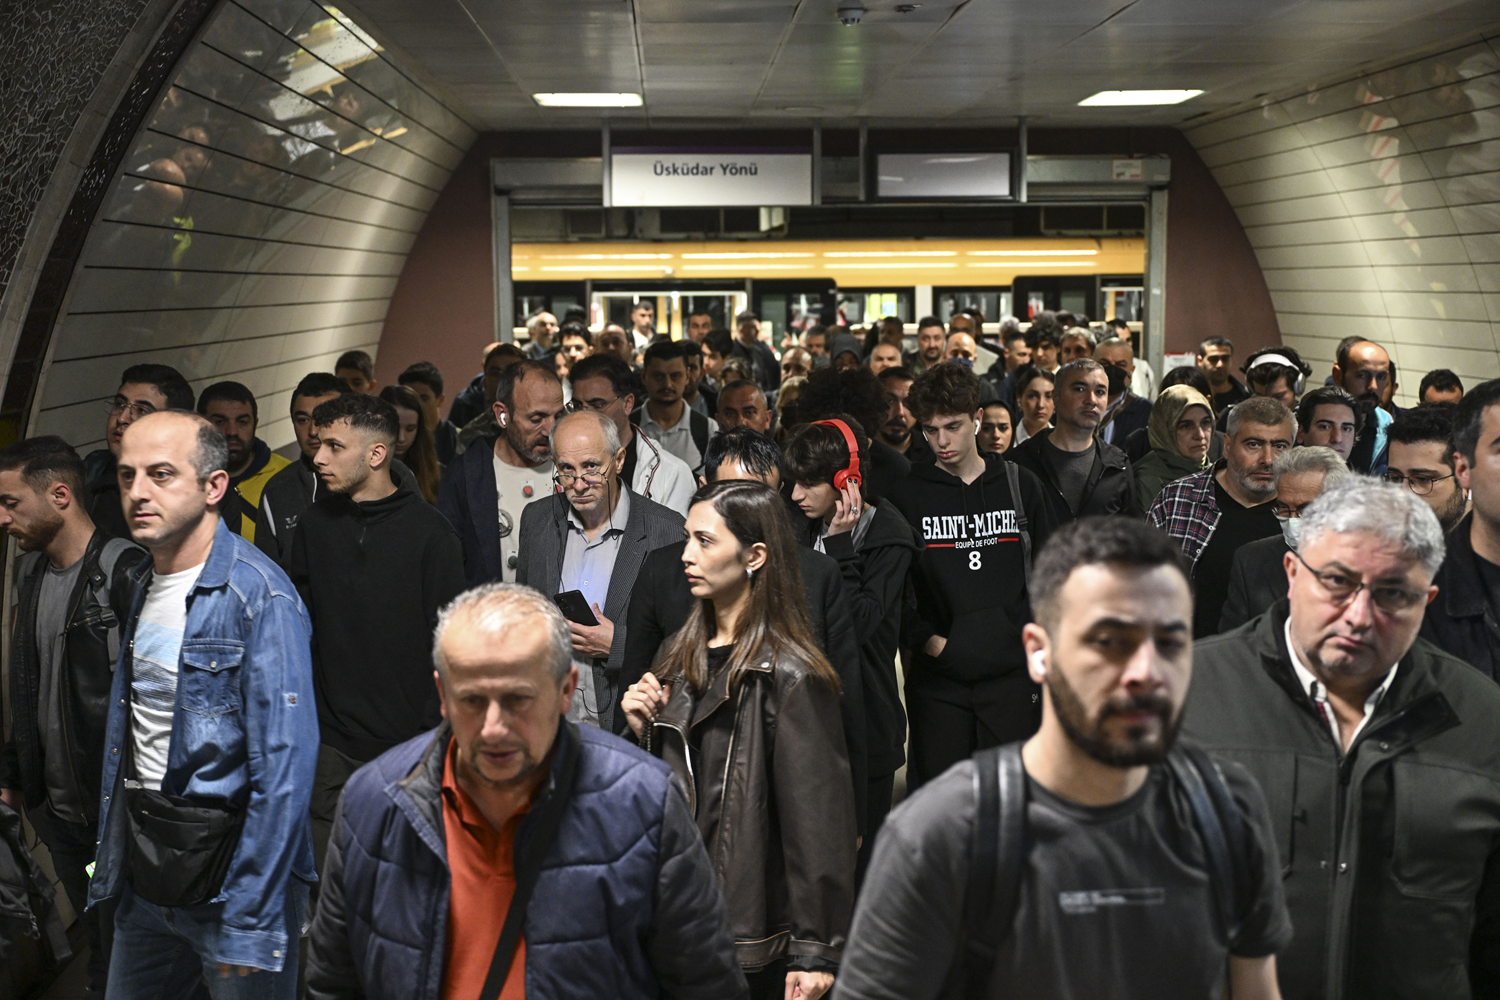 52 saattir çalışmayan metro hattı sonrası AK Parti'den İBB'ye tepki: Yine algı, yine kandırmaca, yine yalan...